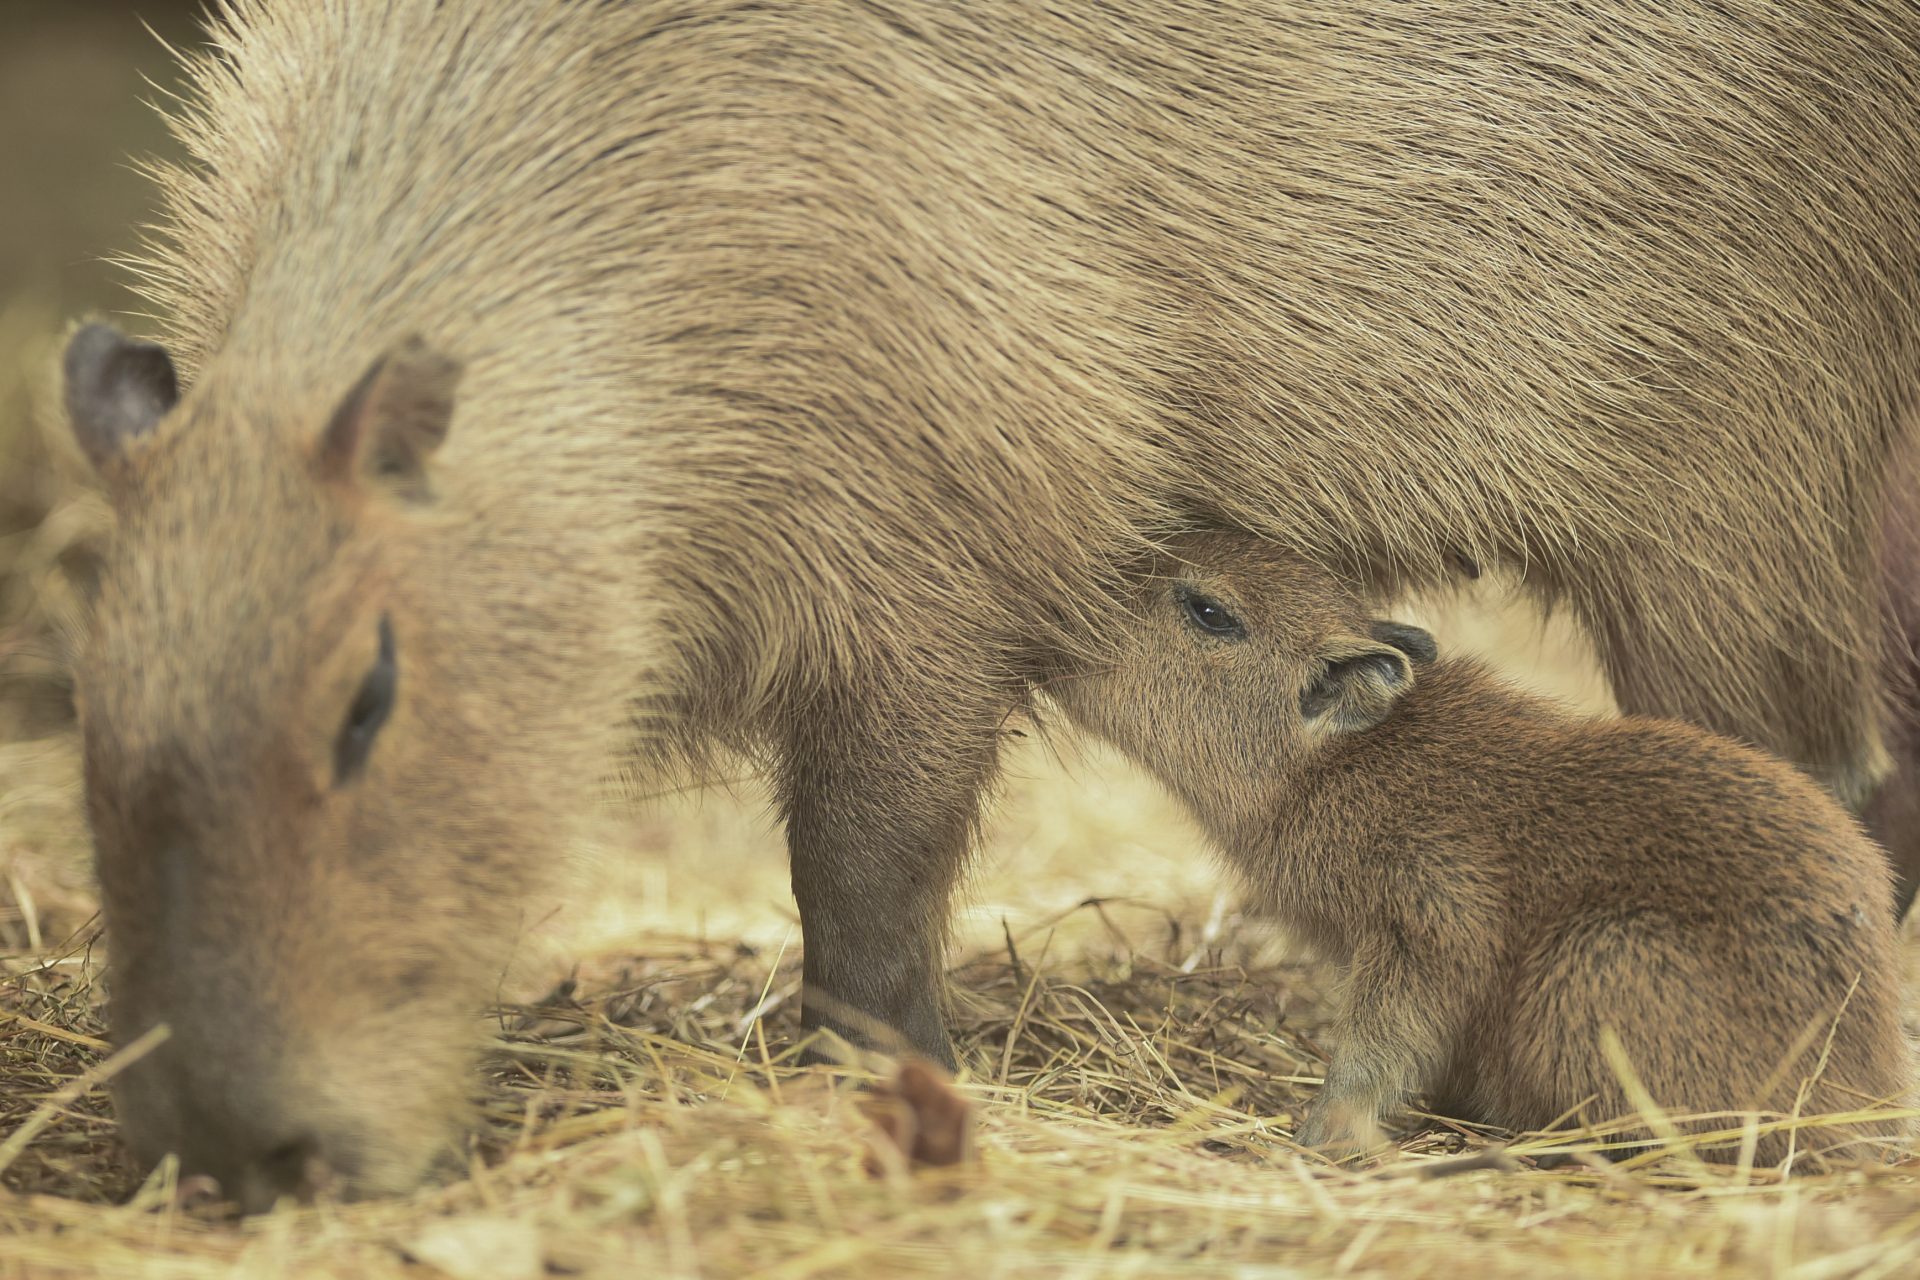 The capybara hype